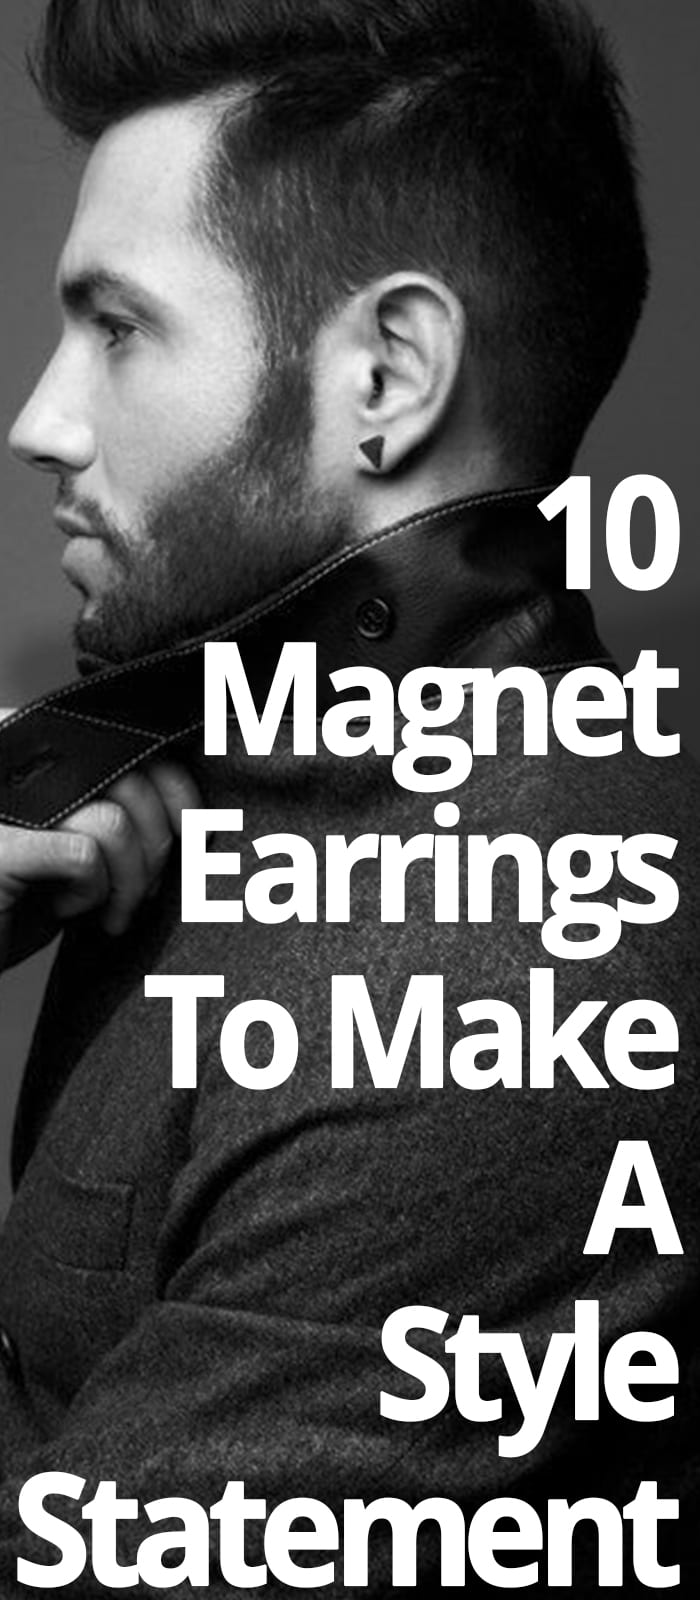 MAGNET EARRINGS FOR MEN